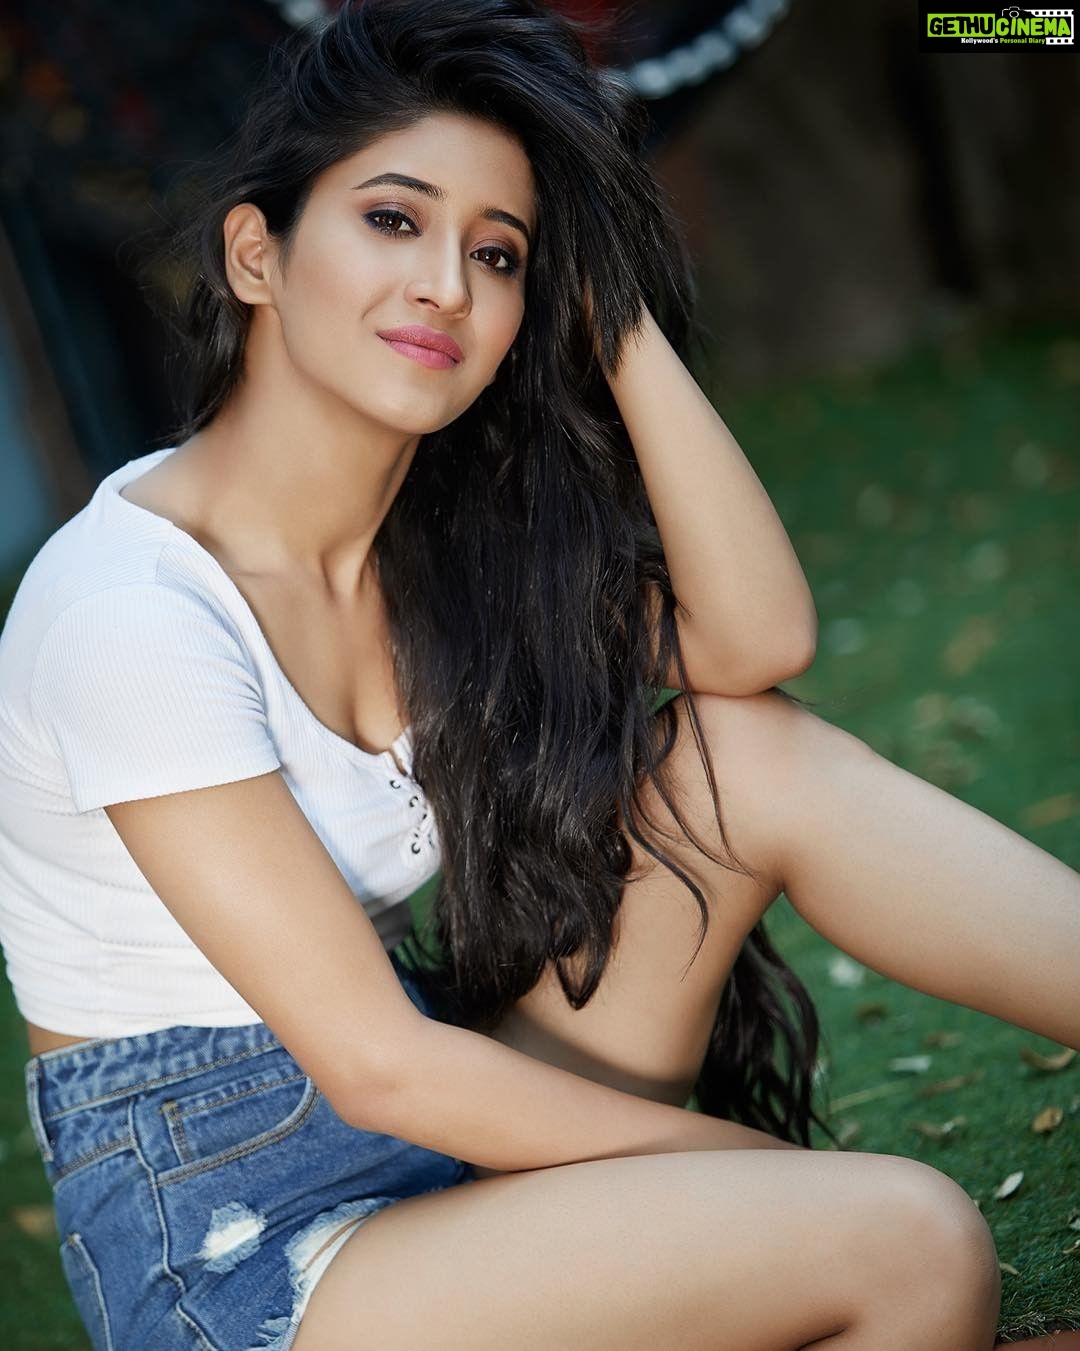 Shivangi Ka Sex Video - Actress Shivangi Joshi HD Photos and Wallpapers April 2018 - Gethu Cinema